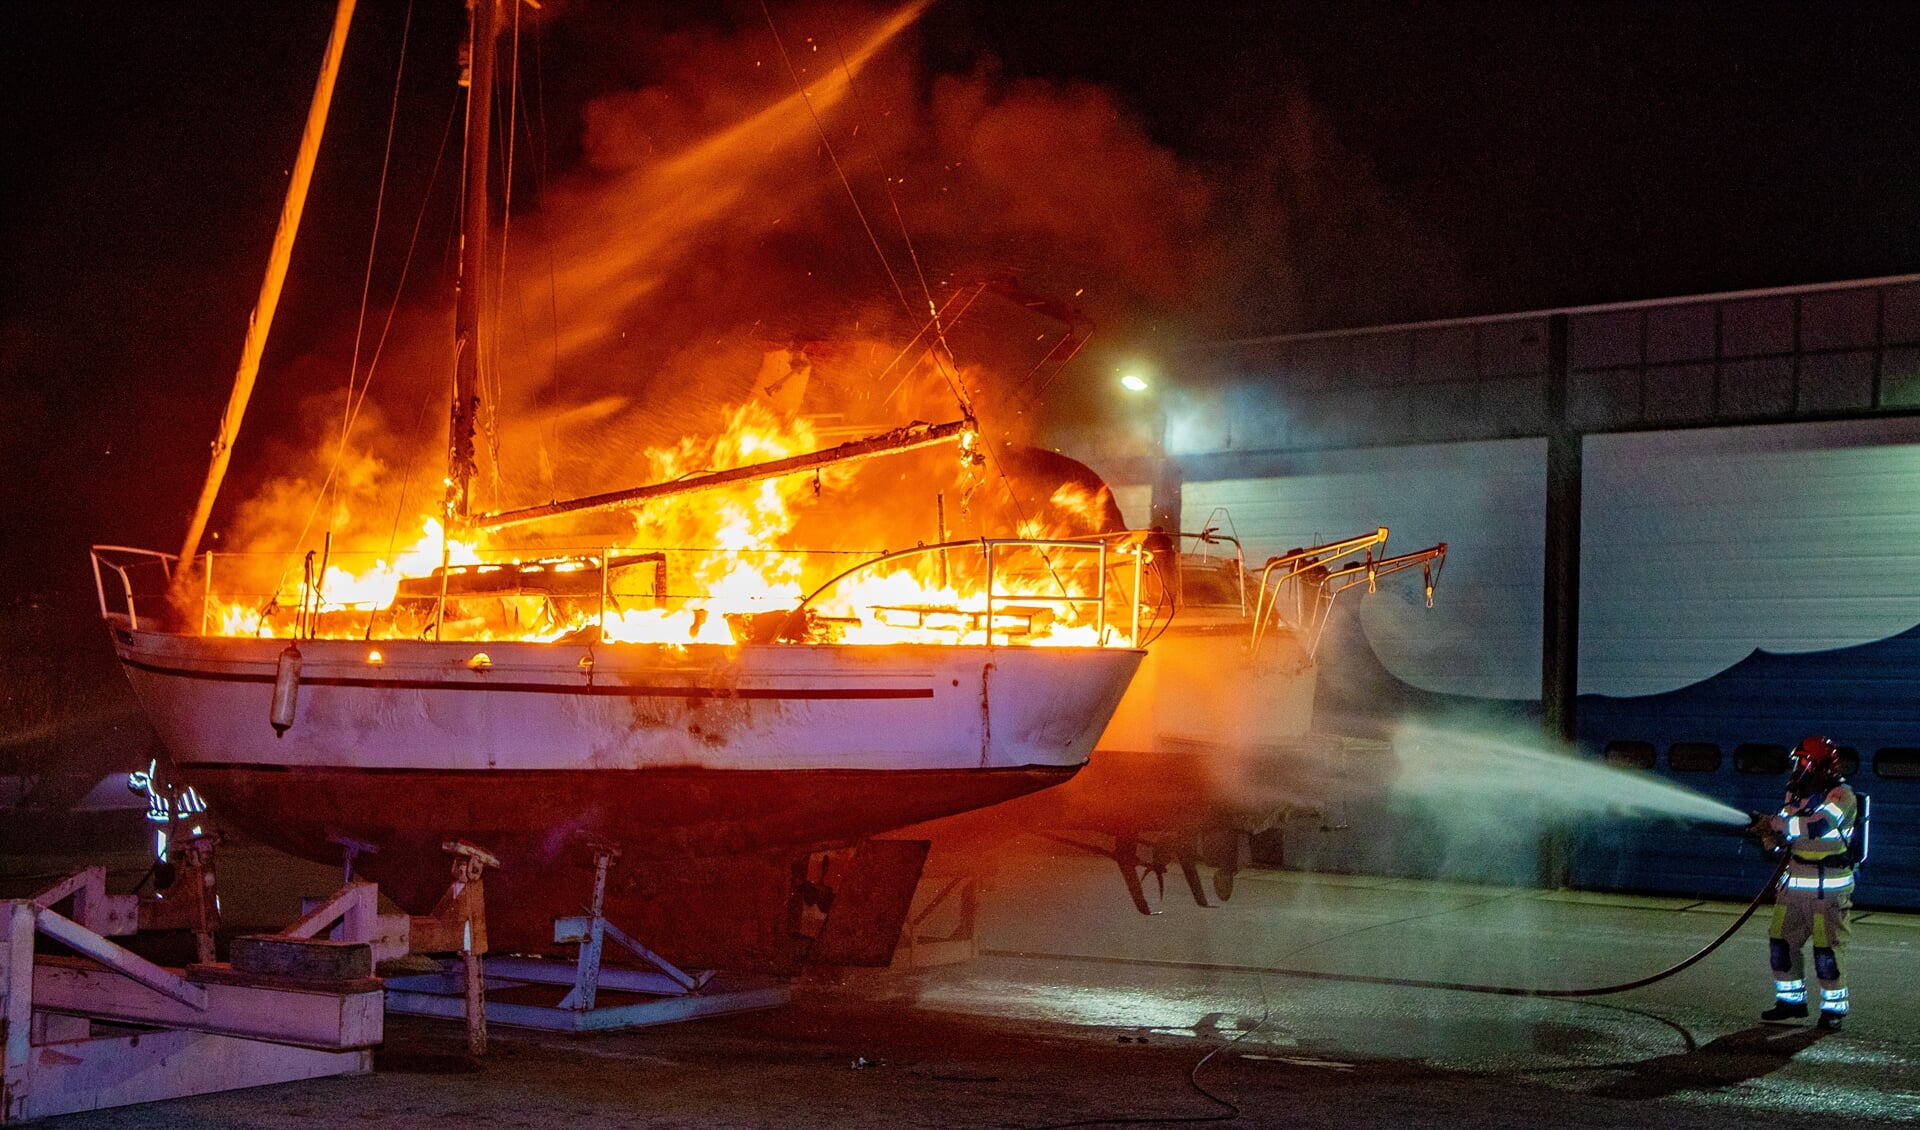 De boot is deze keer helemaal afgebrand.